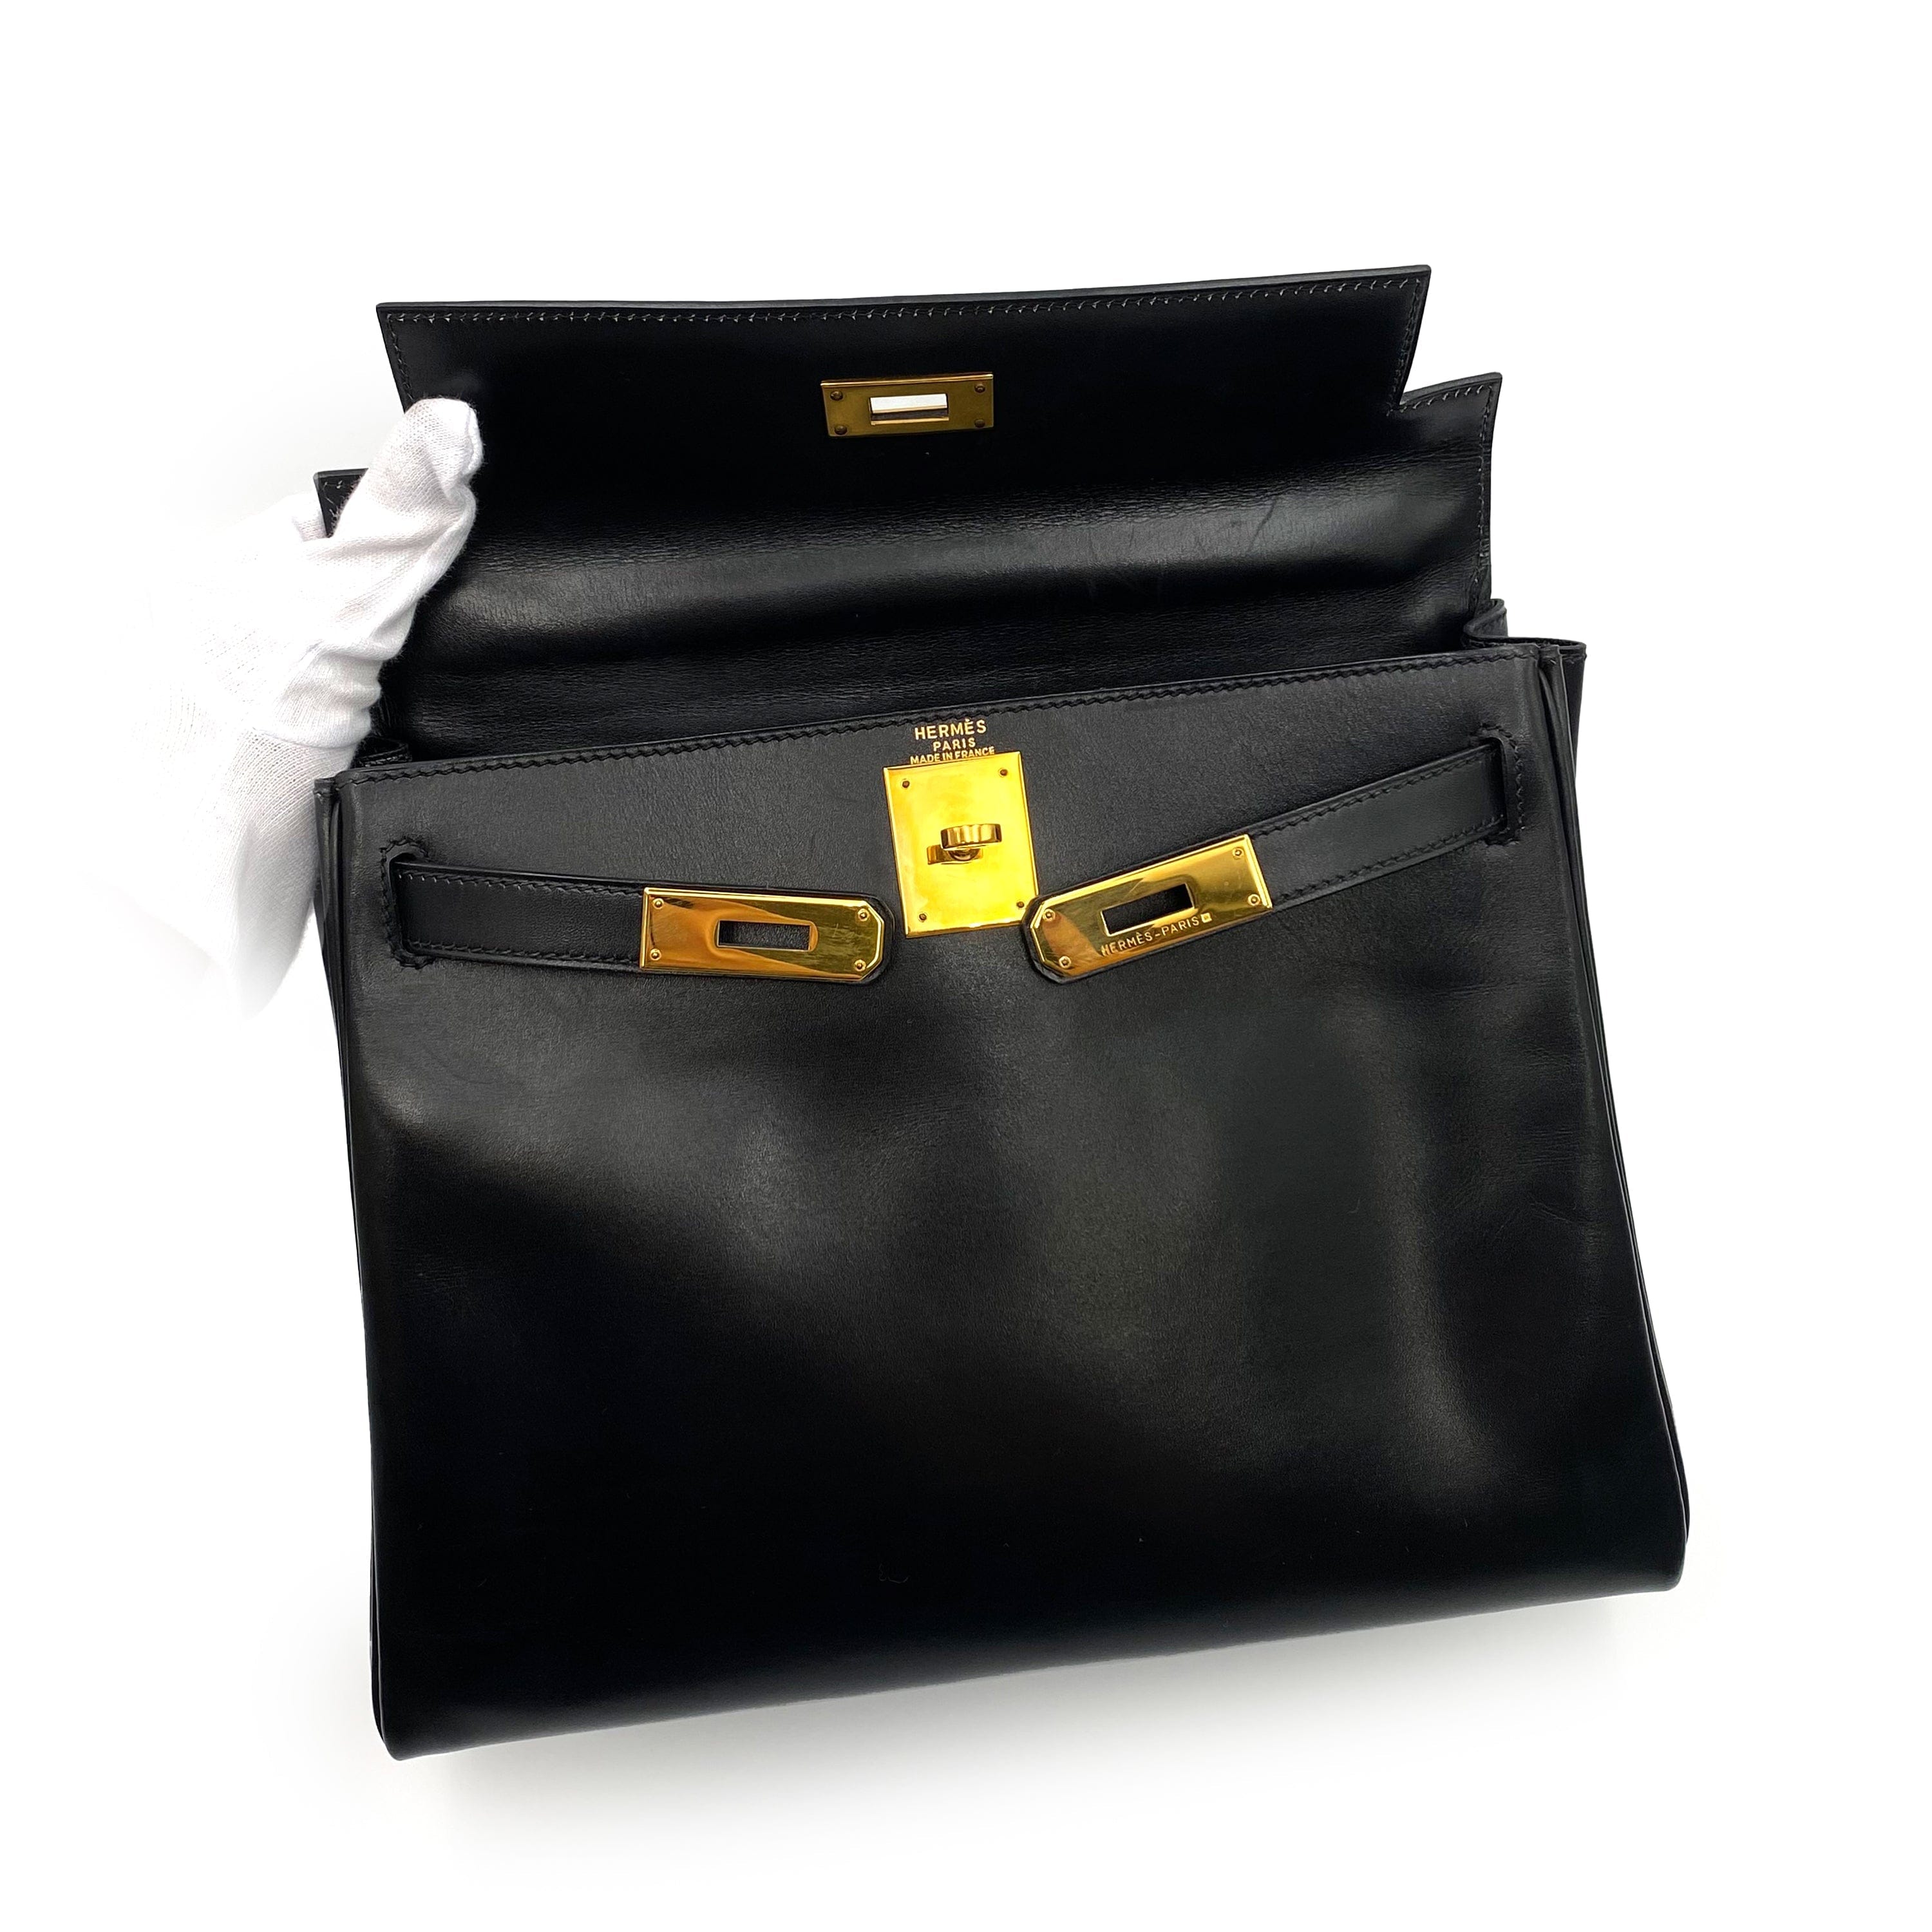 Hermès HERMES KELLY 28 RETOURNE BLACK BOXCALF HAND SHOULDER BAG 〇Z GHW 90230701